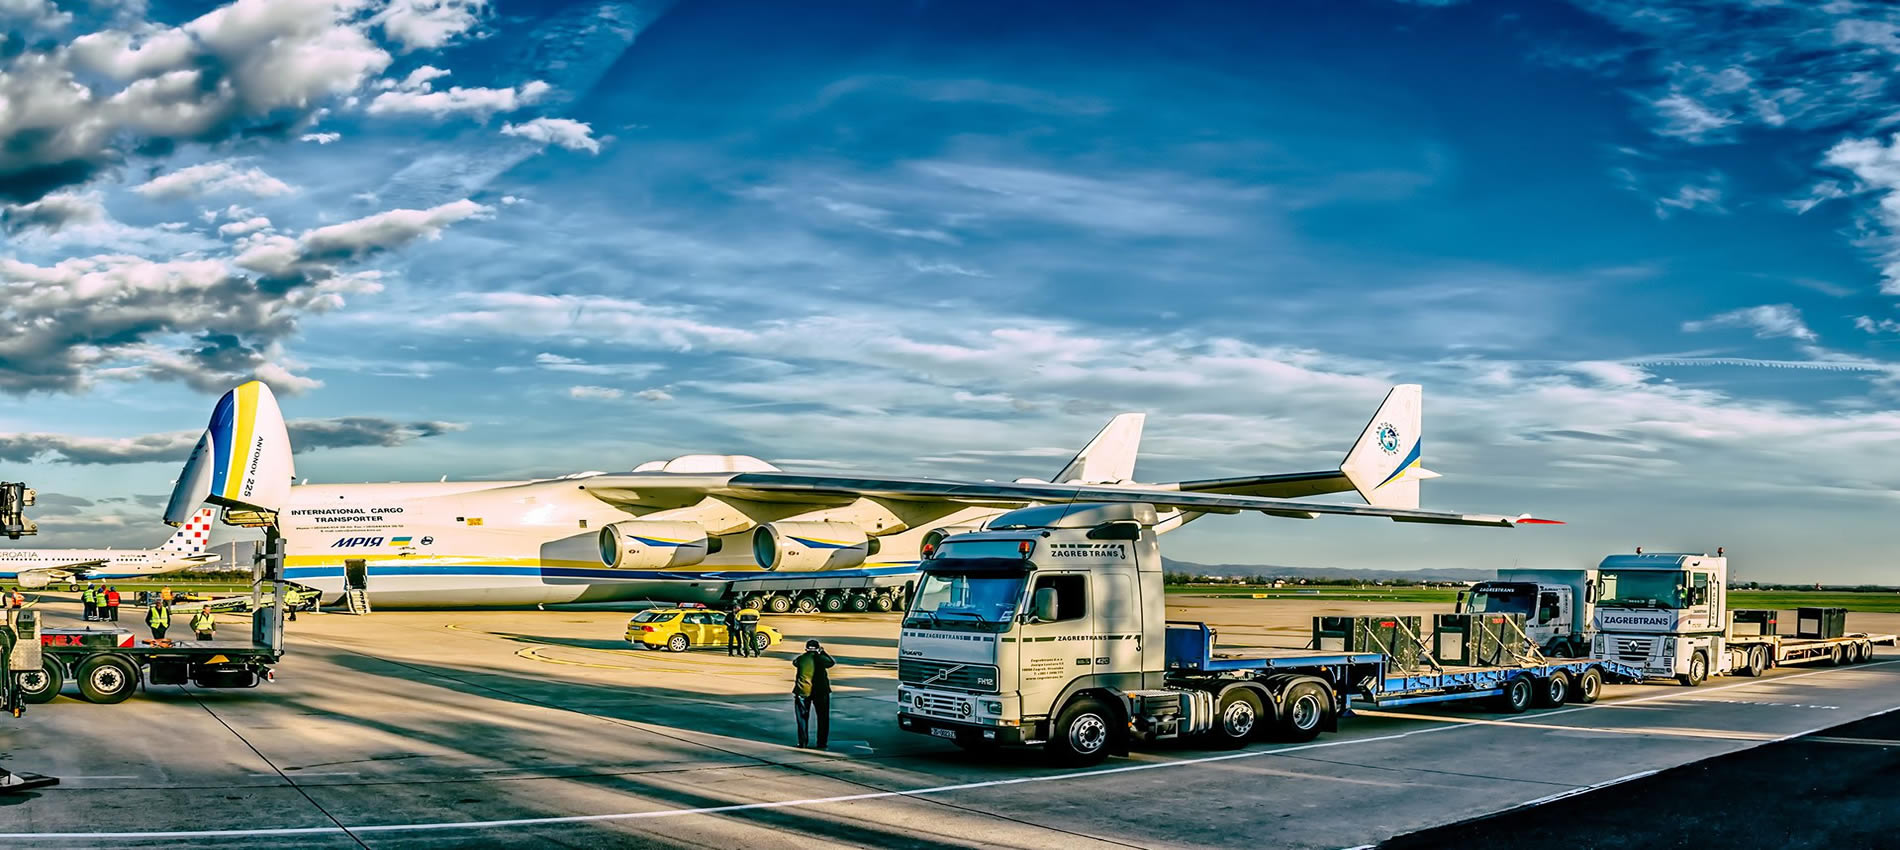 International Air freight